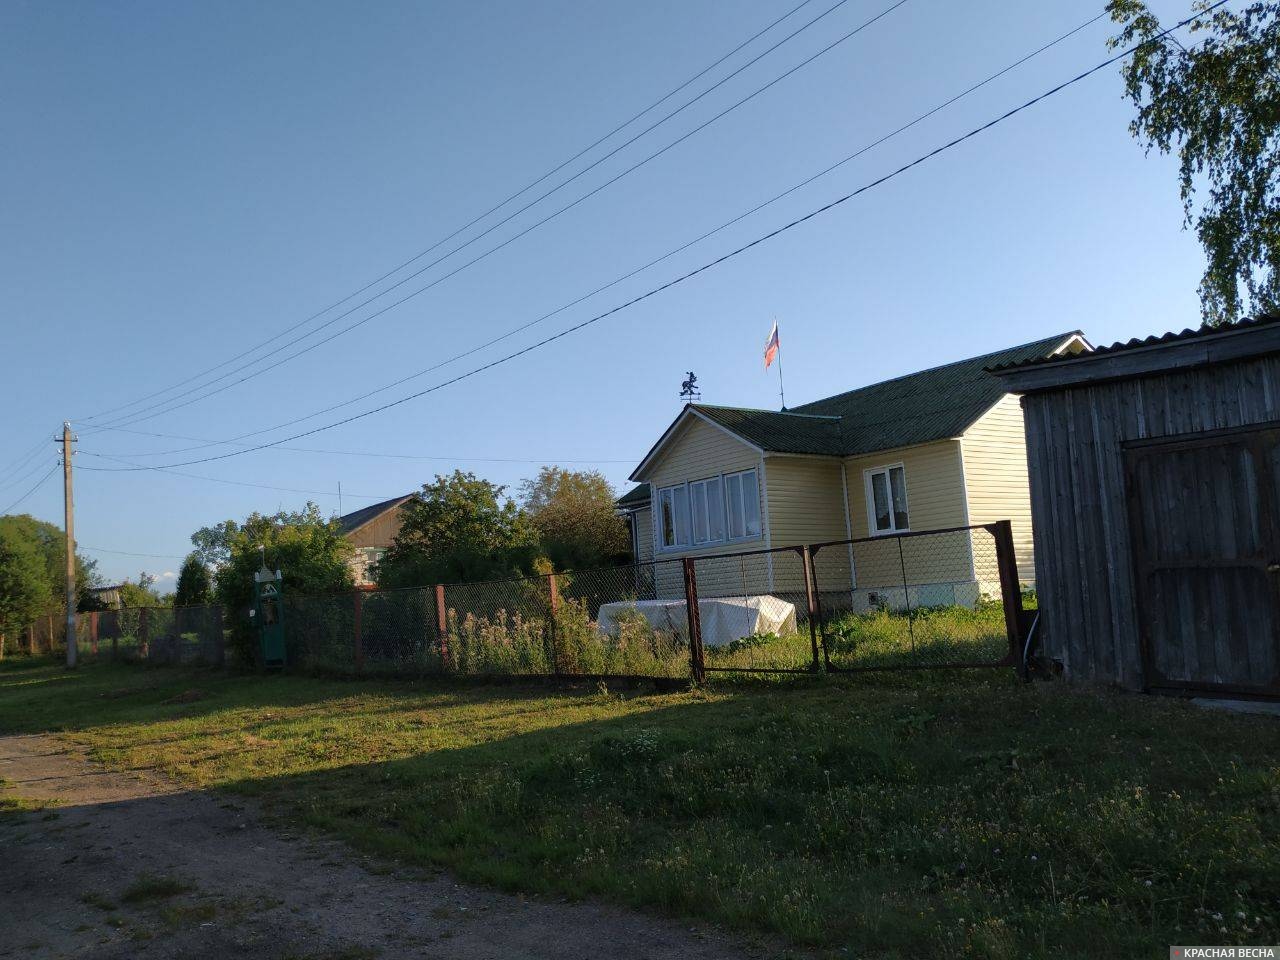 Дом с флагом России